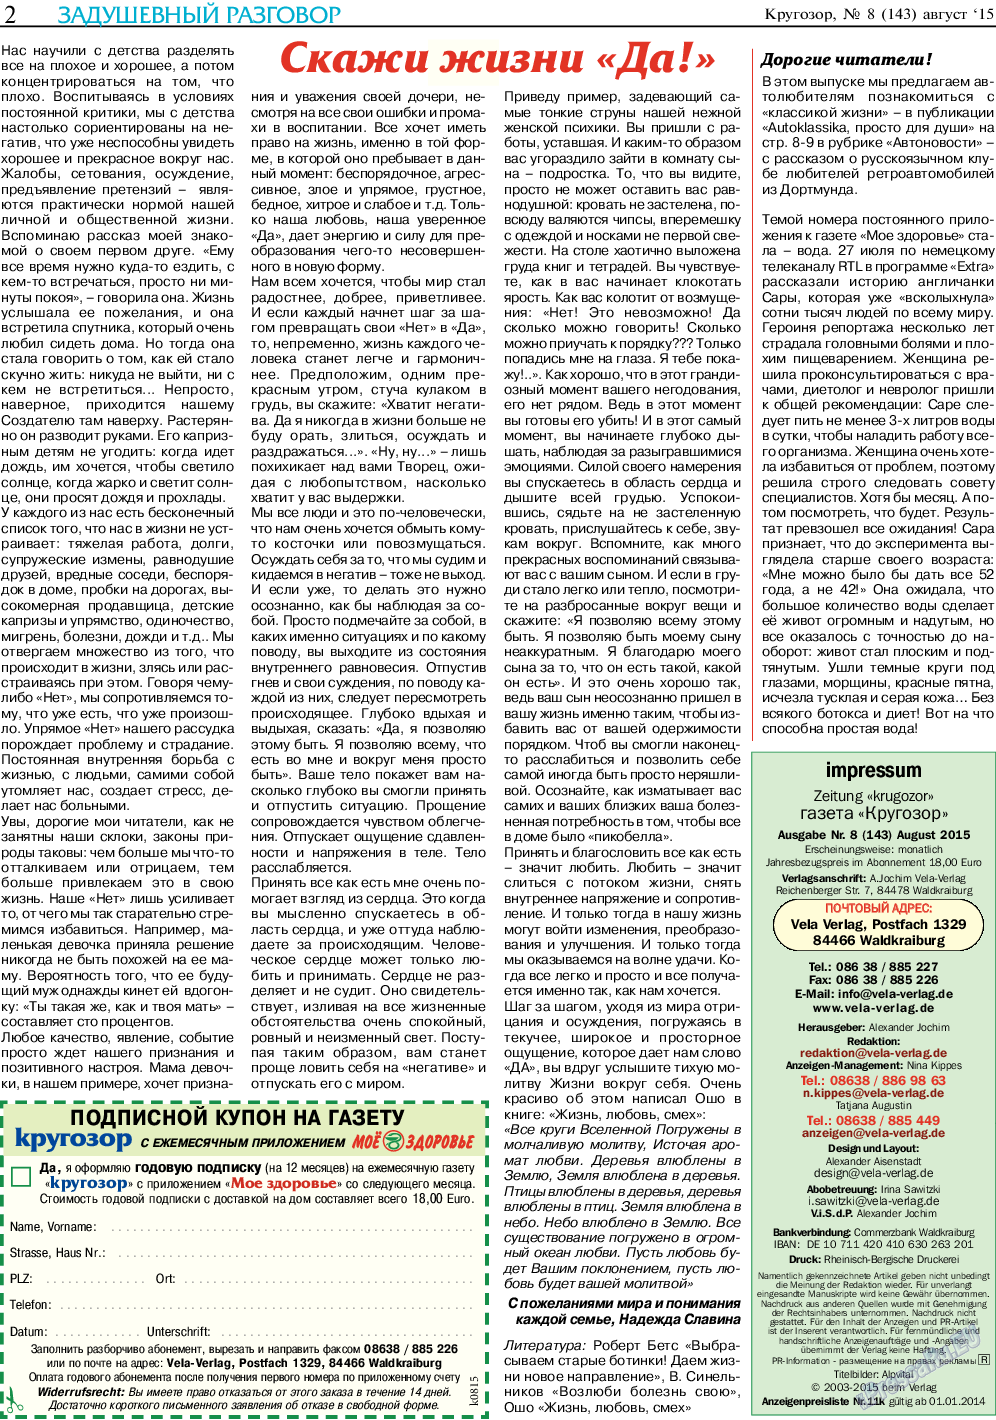 Кругозор, газета. 2015 №8 стр.2